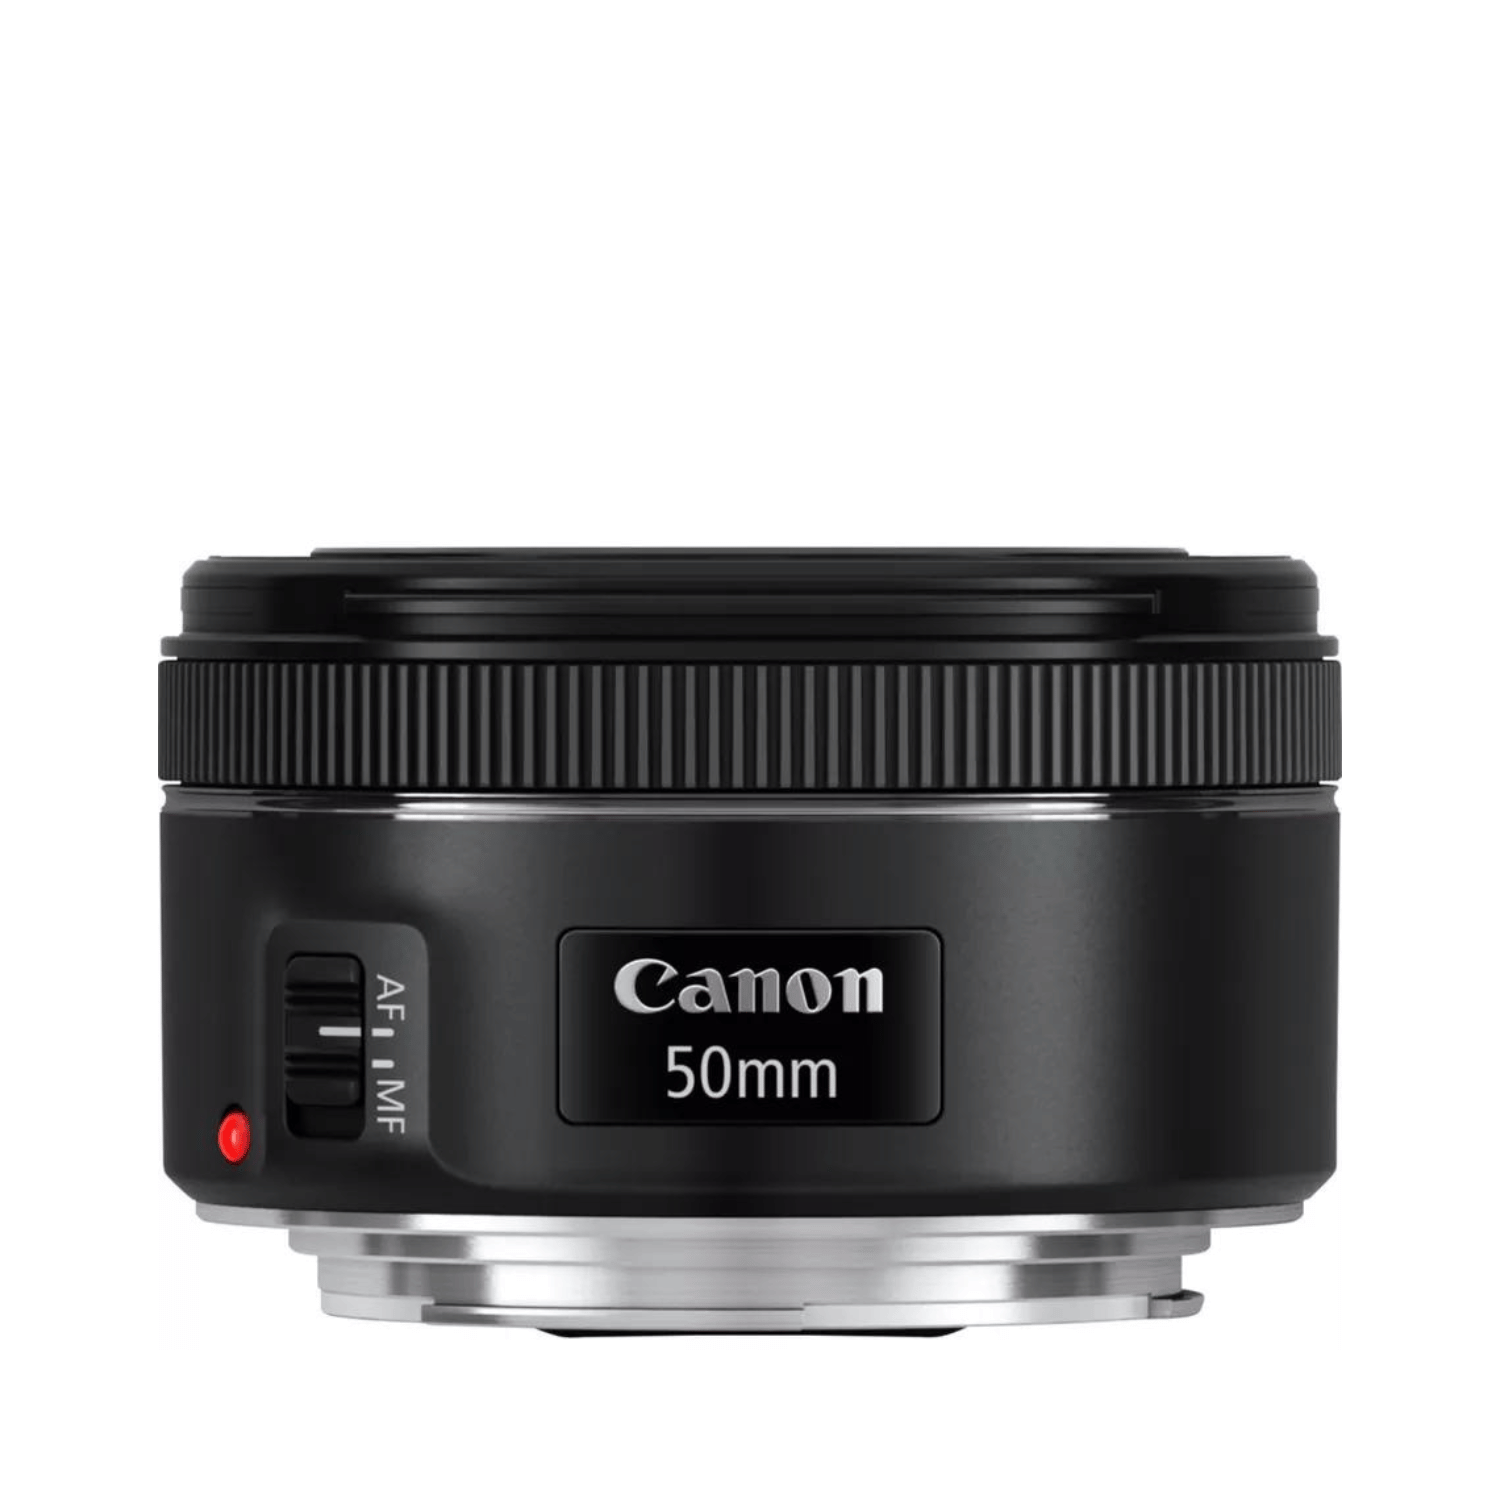 Canon EF 50mm f1.8 STM -Gar. Canon Italia -Cine Sud è da 47 anni sul mercato! 0570C005